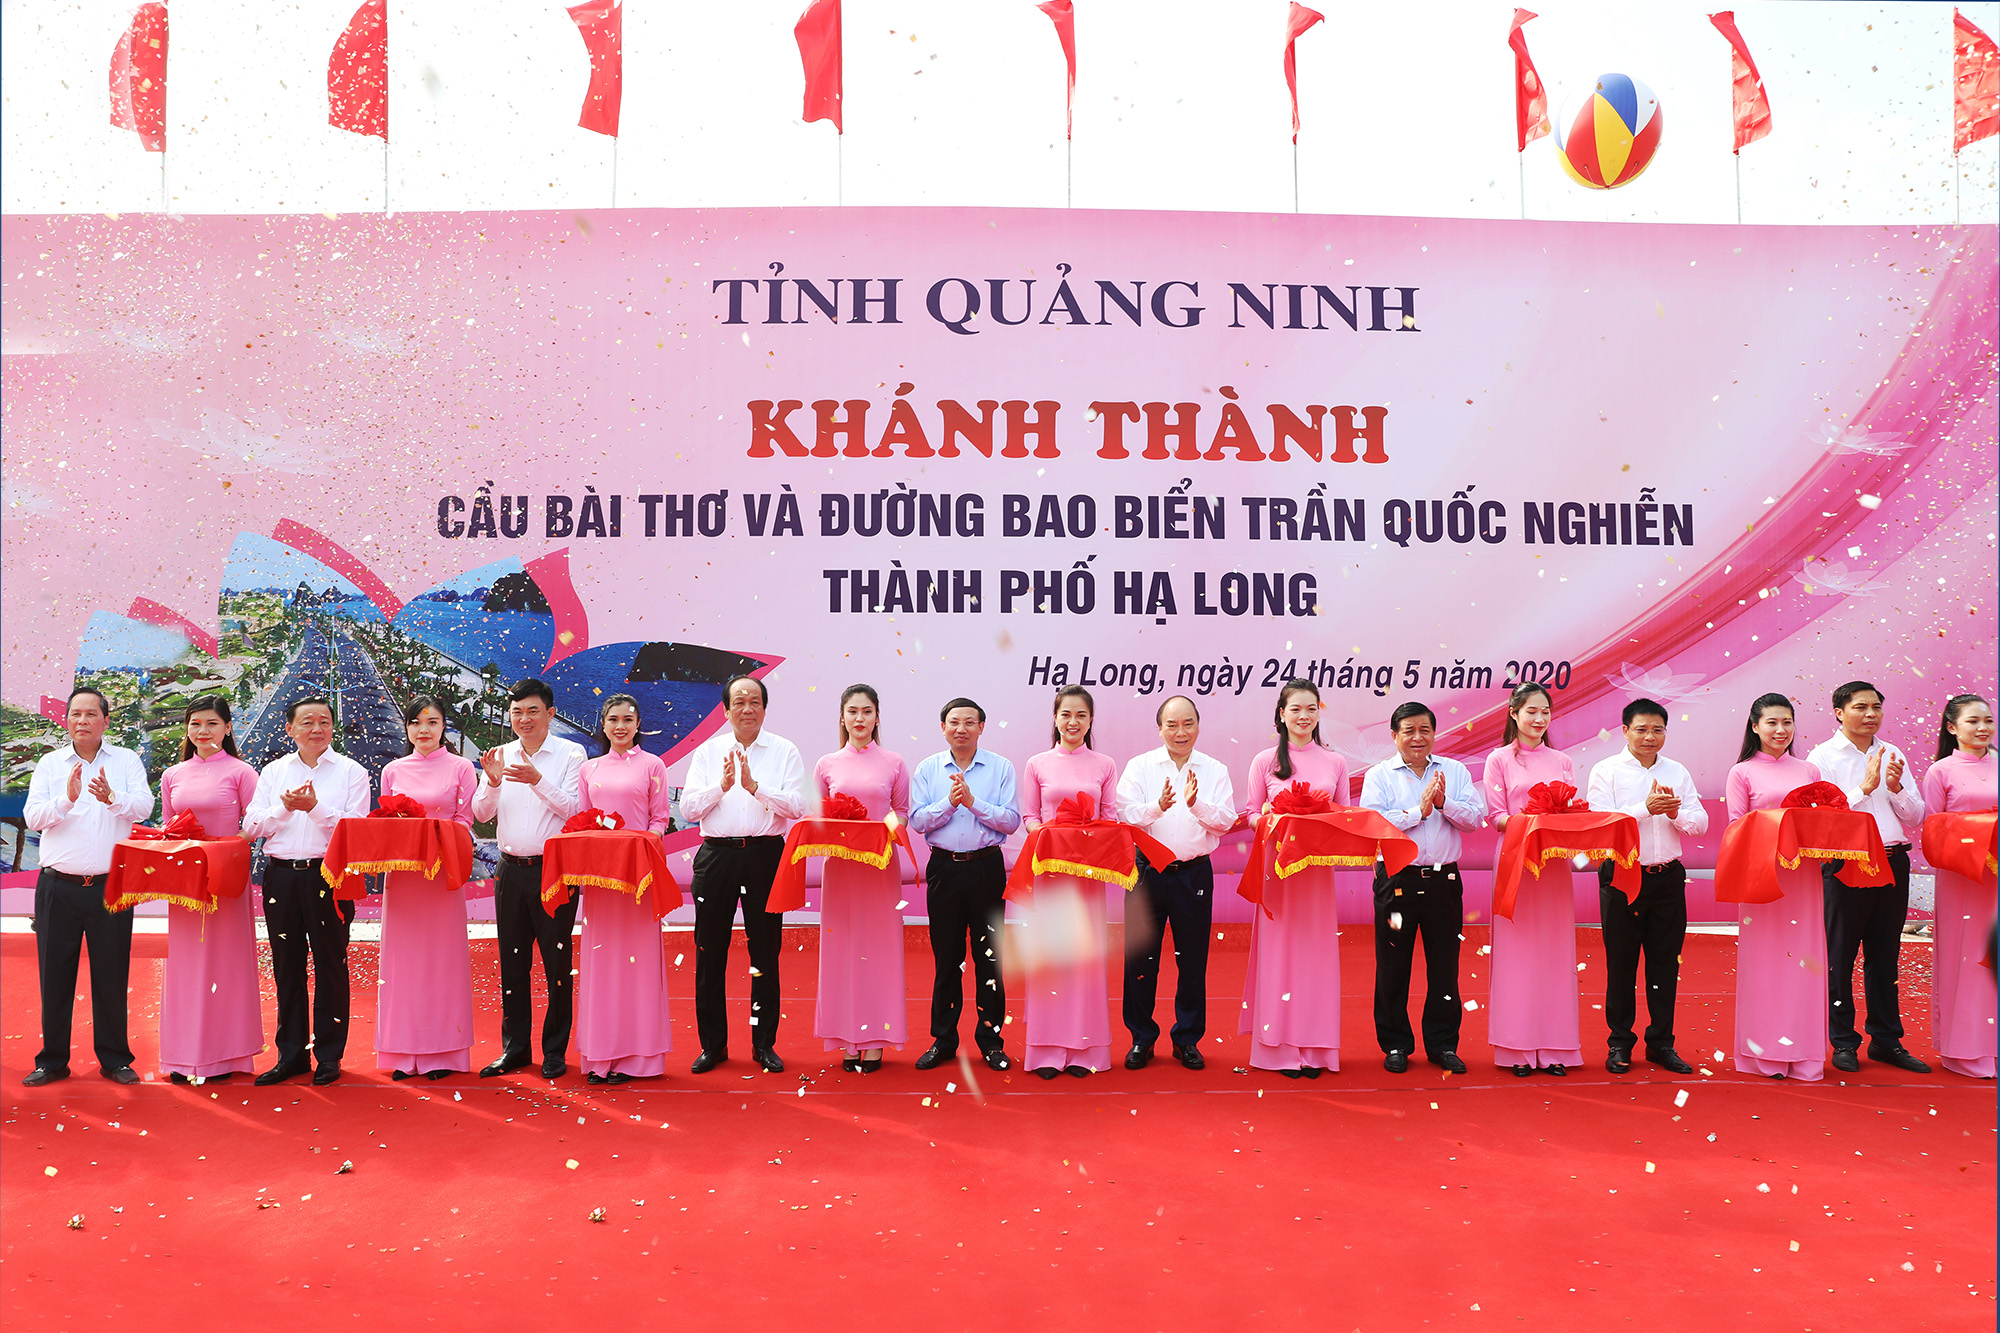 Trong khuôn khổ chuyến thăm và làm việc tại tỉnh, Thủ tướng Nguyễn Xuân Phúc dự và cắt băng khánh thành Đường bao biển Trần Quốc Nghiễn.